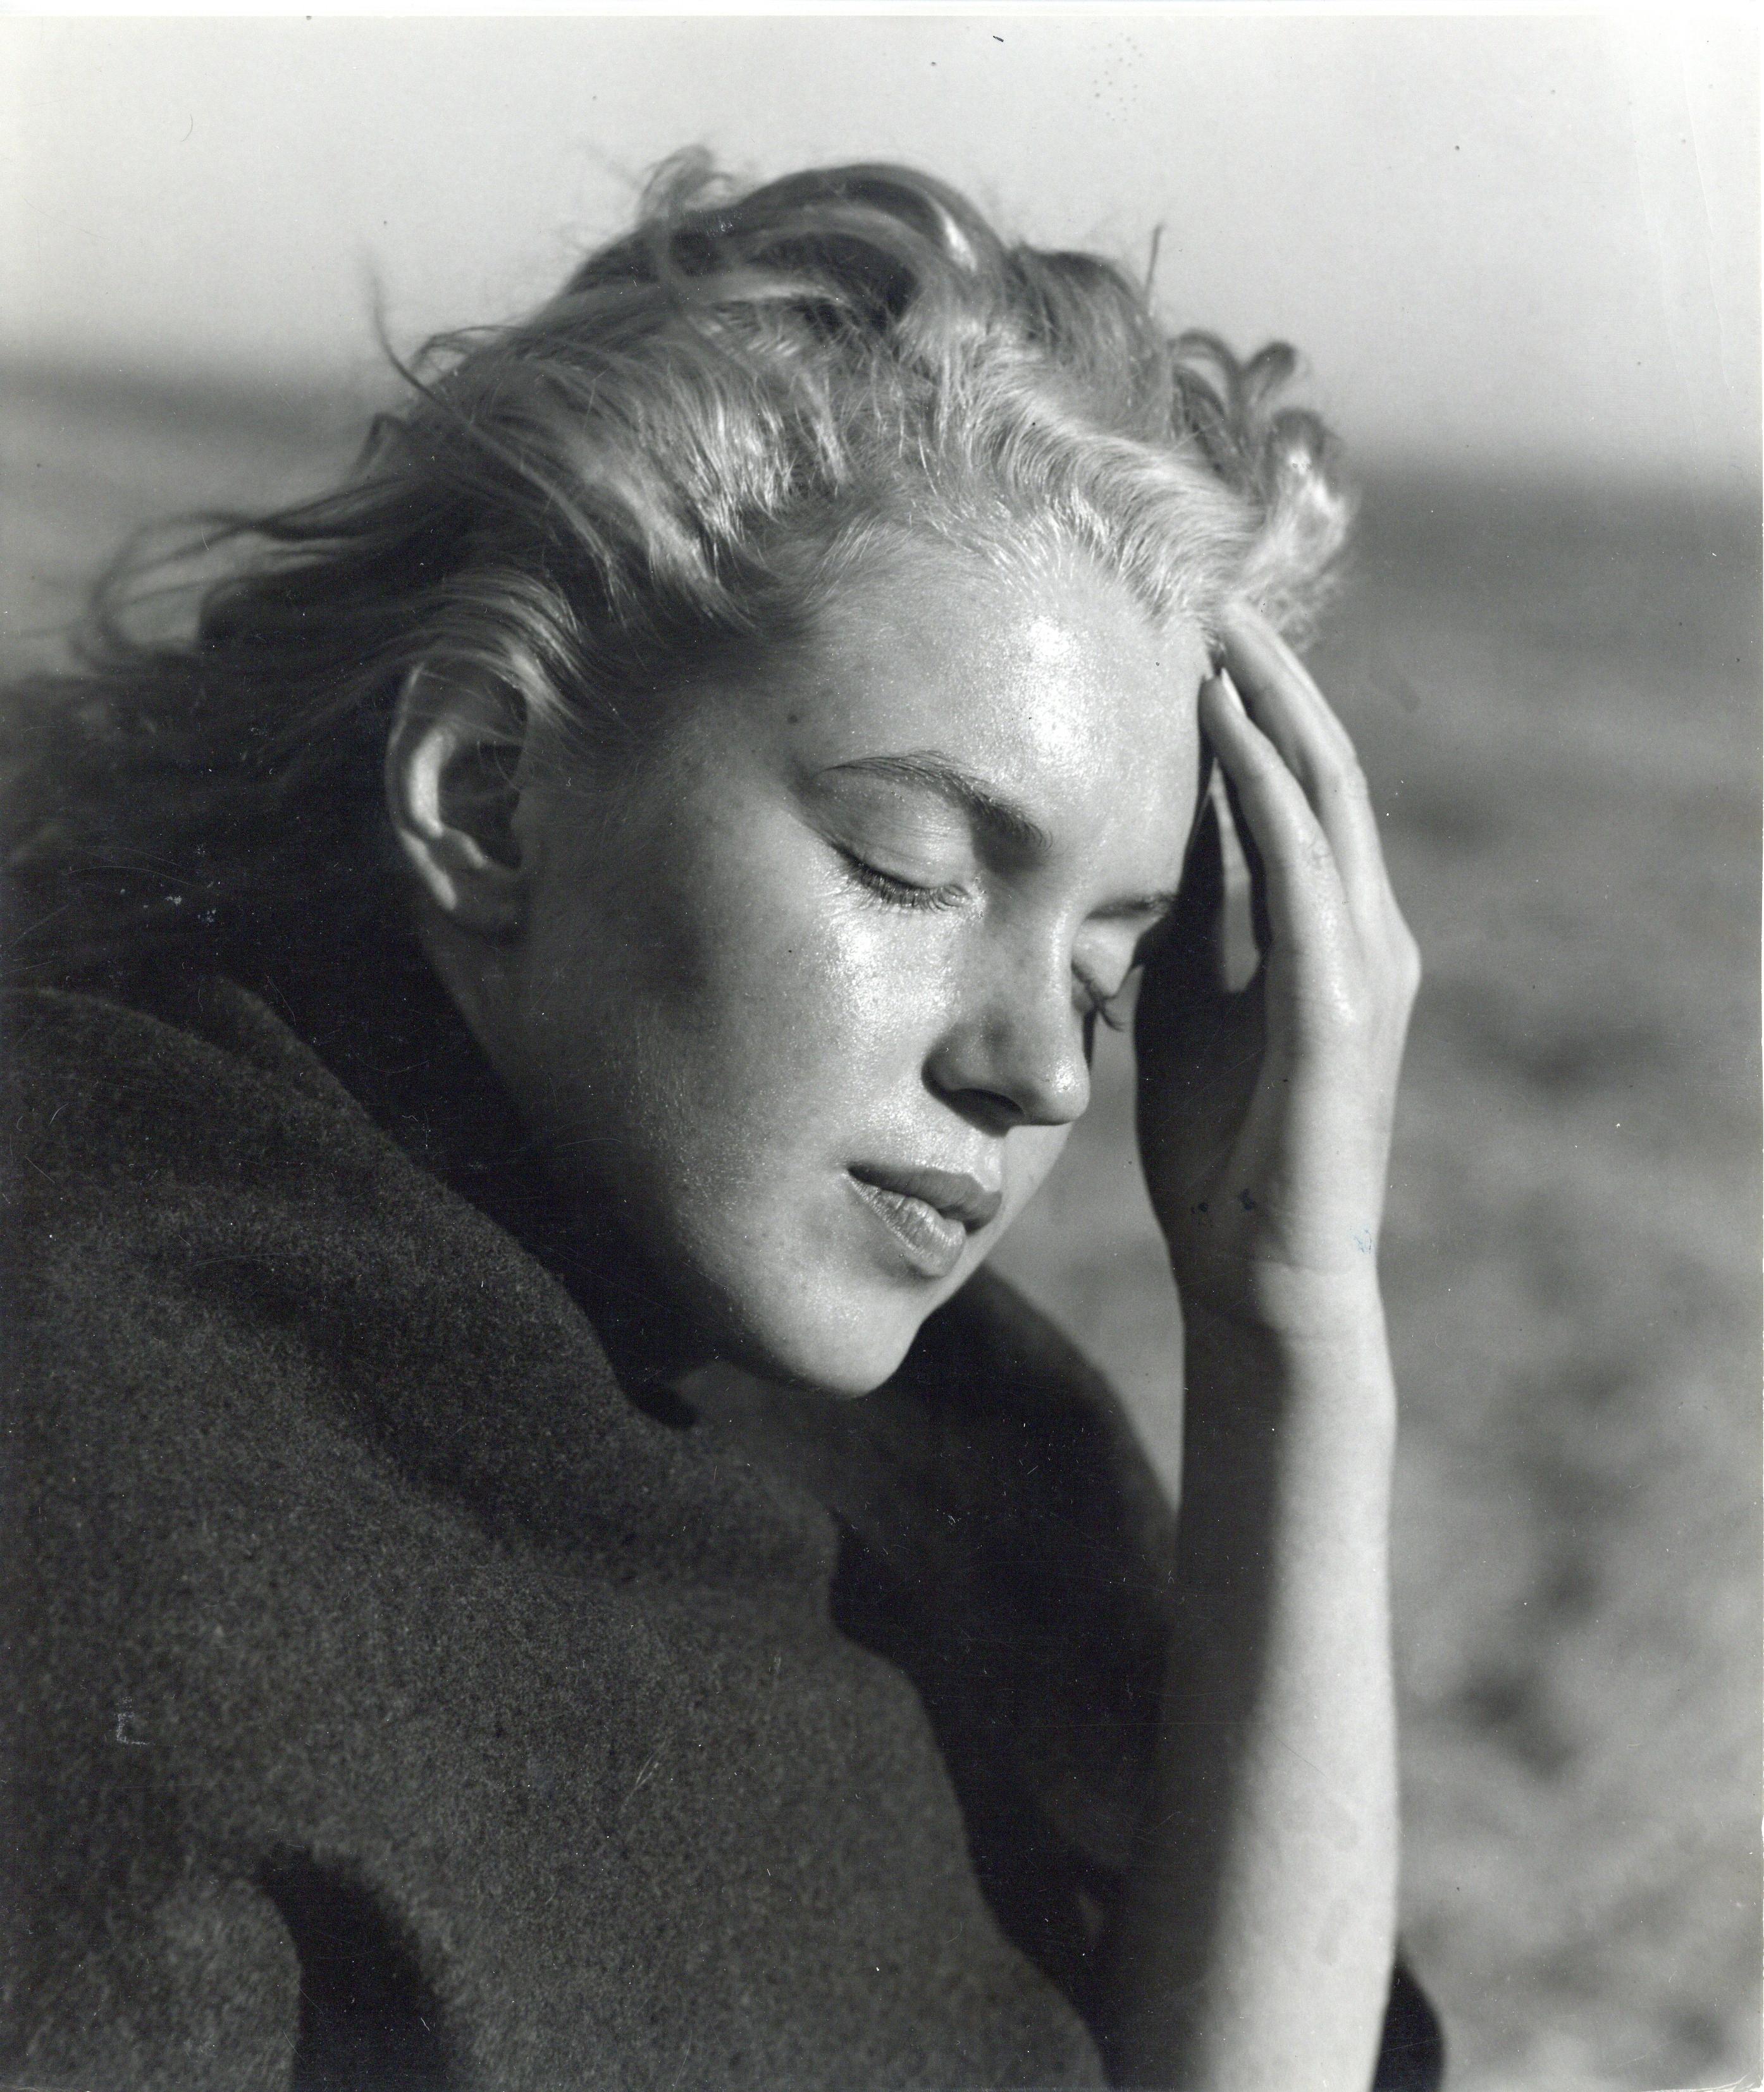 Portrait Photograph Andre de Dienes - Marilyn Monroe on the Beach - Photographie d'origine vintage